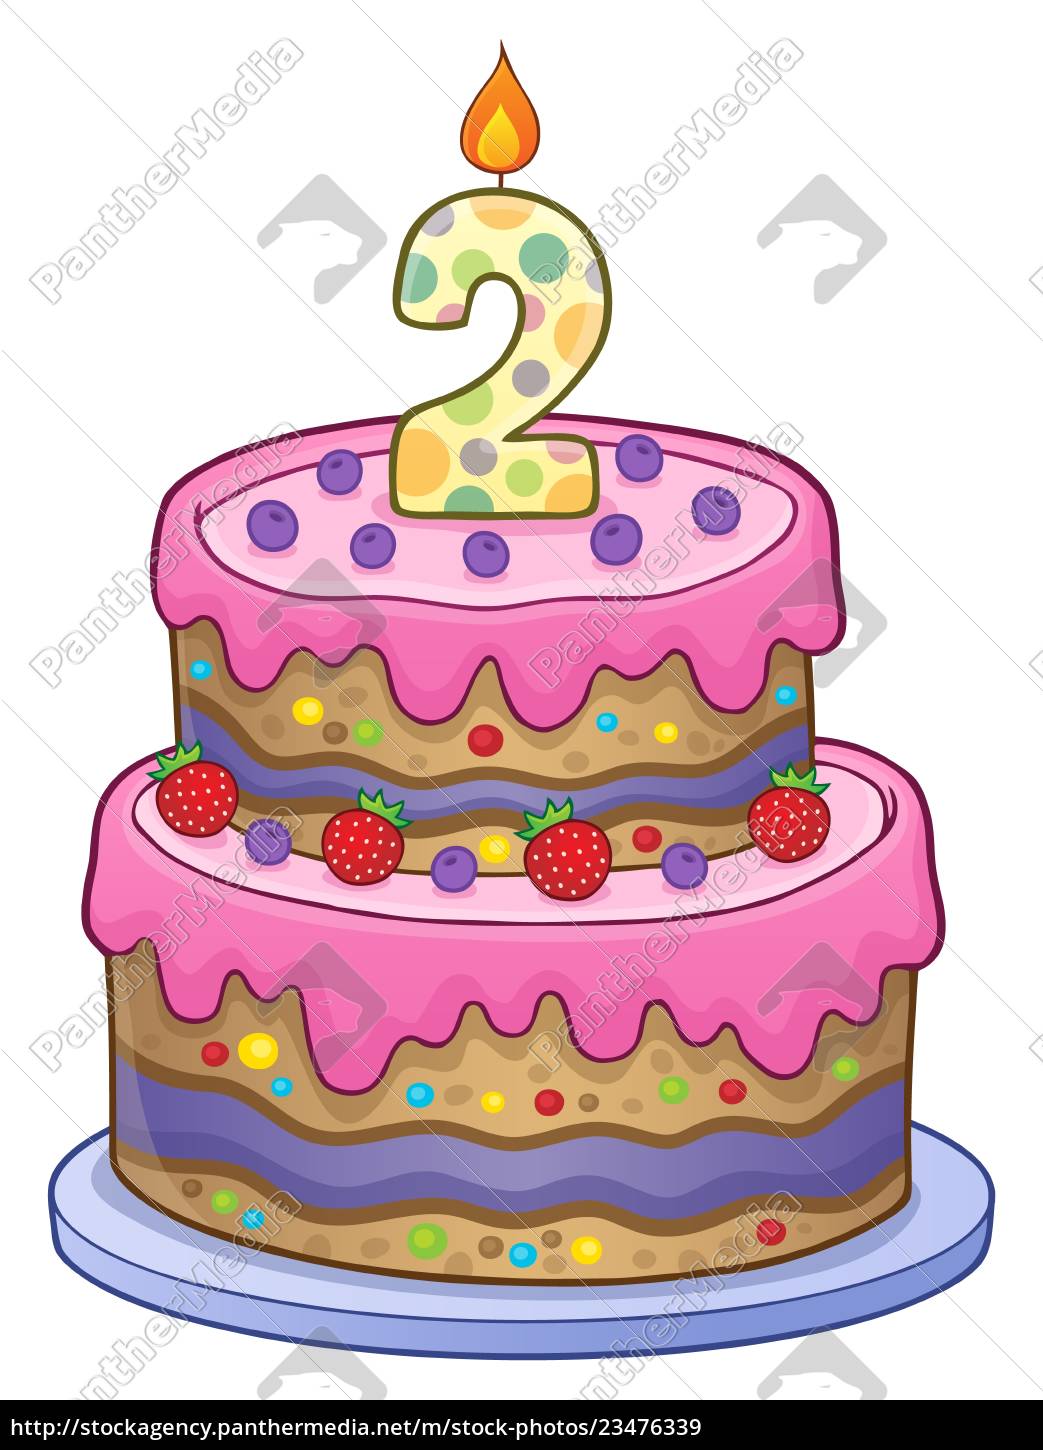 pastel de cumpleaños imagen de 2 años de edad - Foto de archivo #23476339 |  Agencia de stock PantherMedia